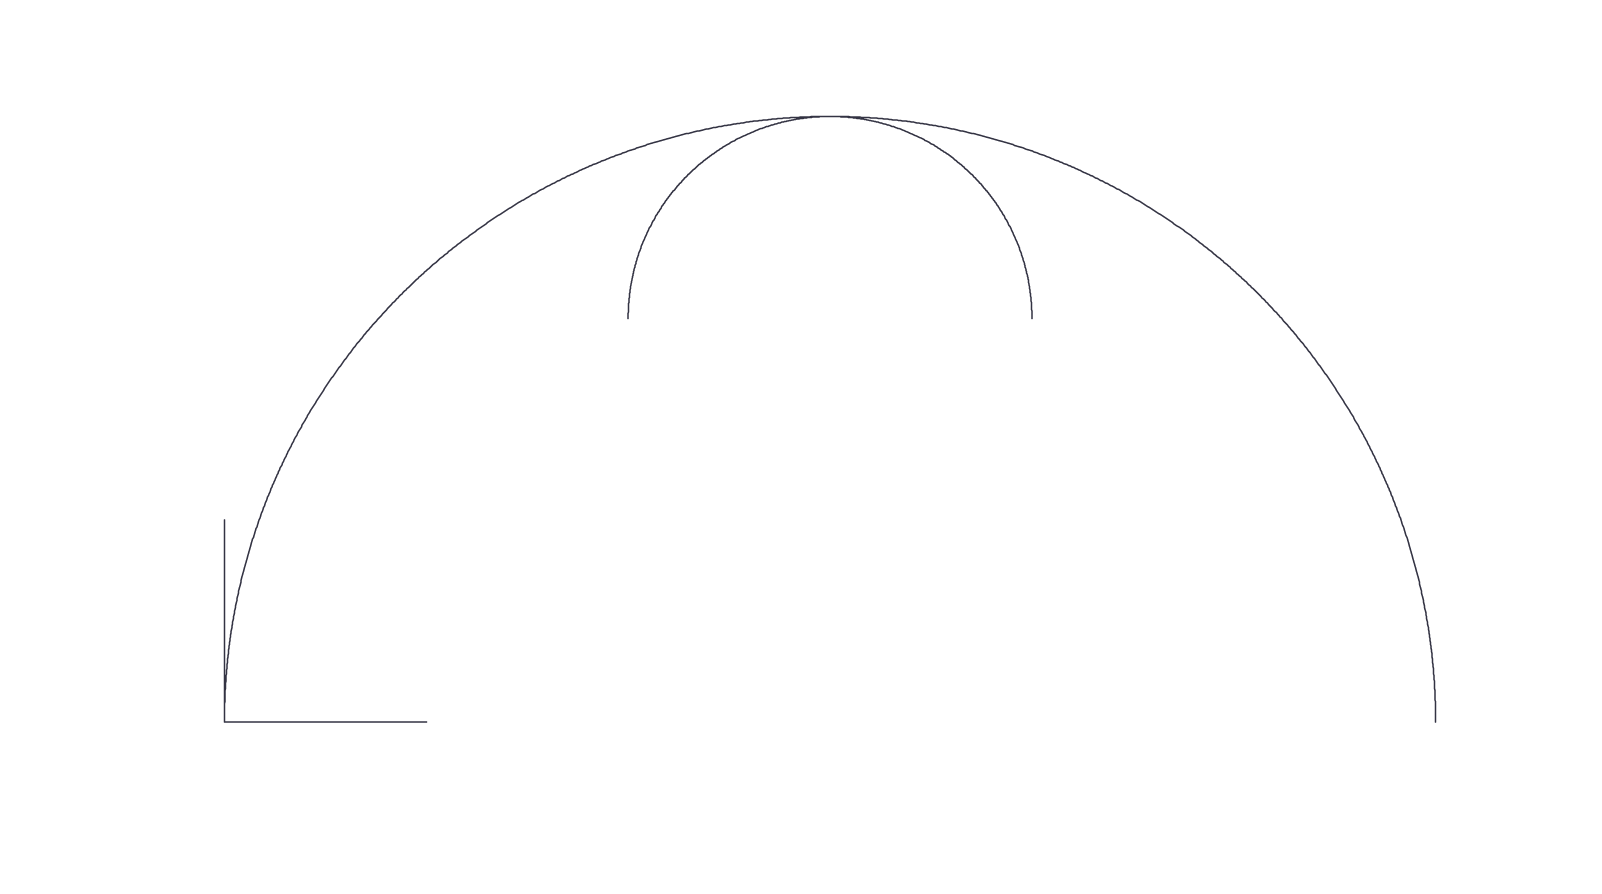 малювання кривих ліній у .NET